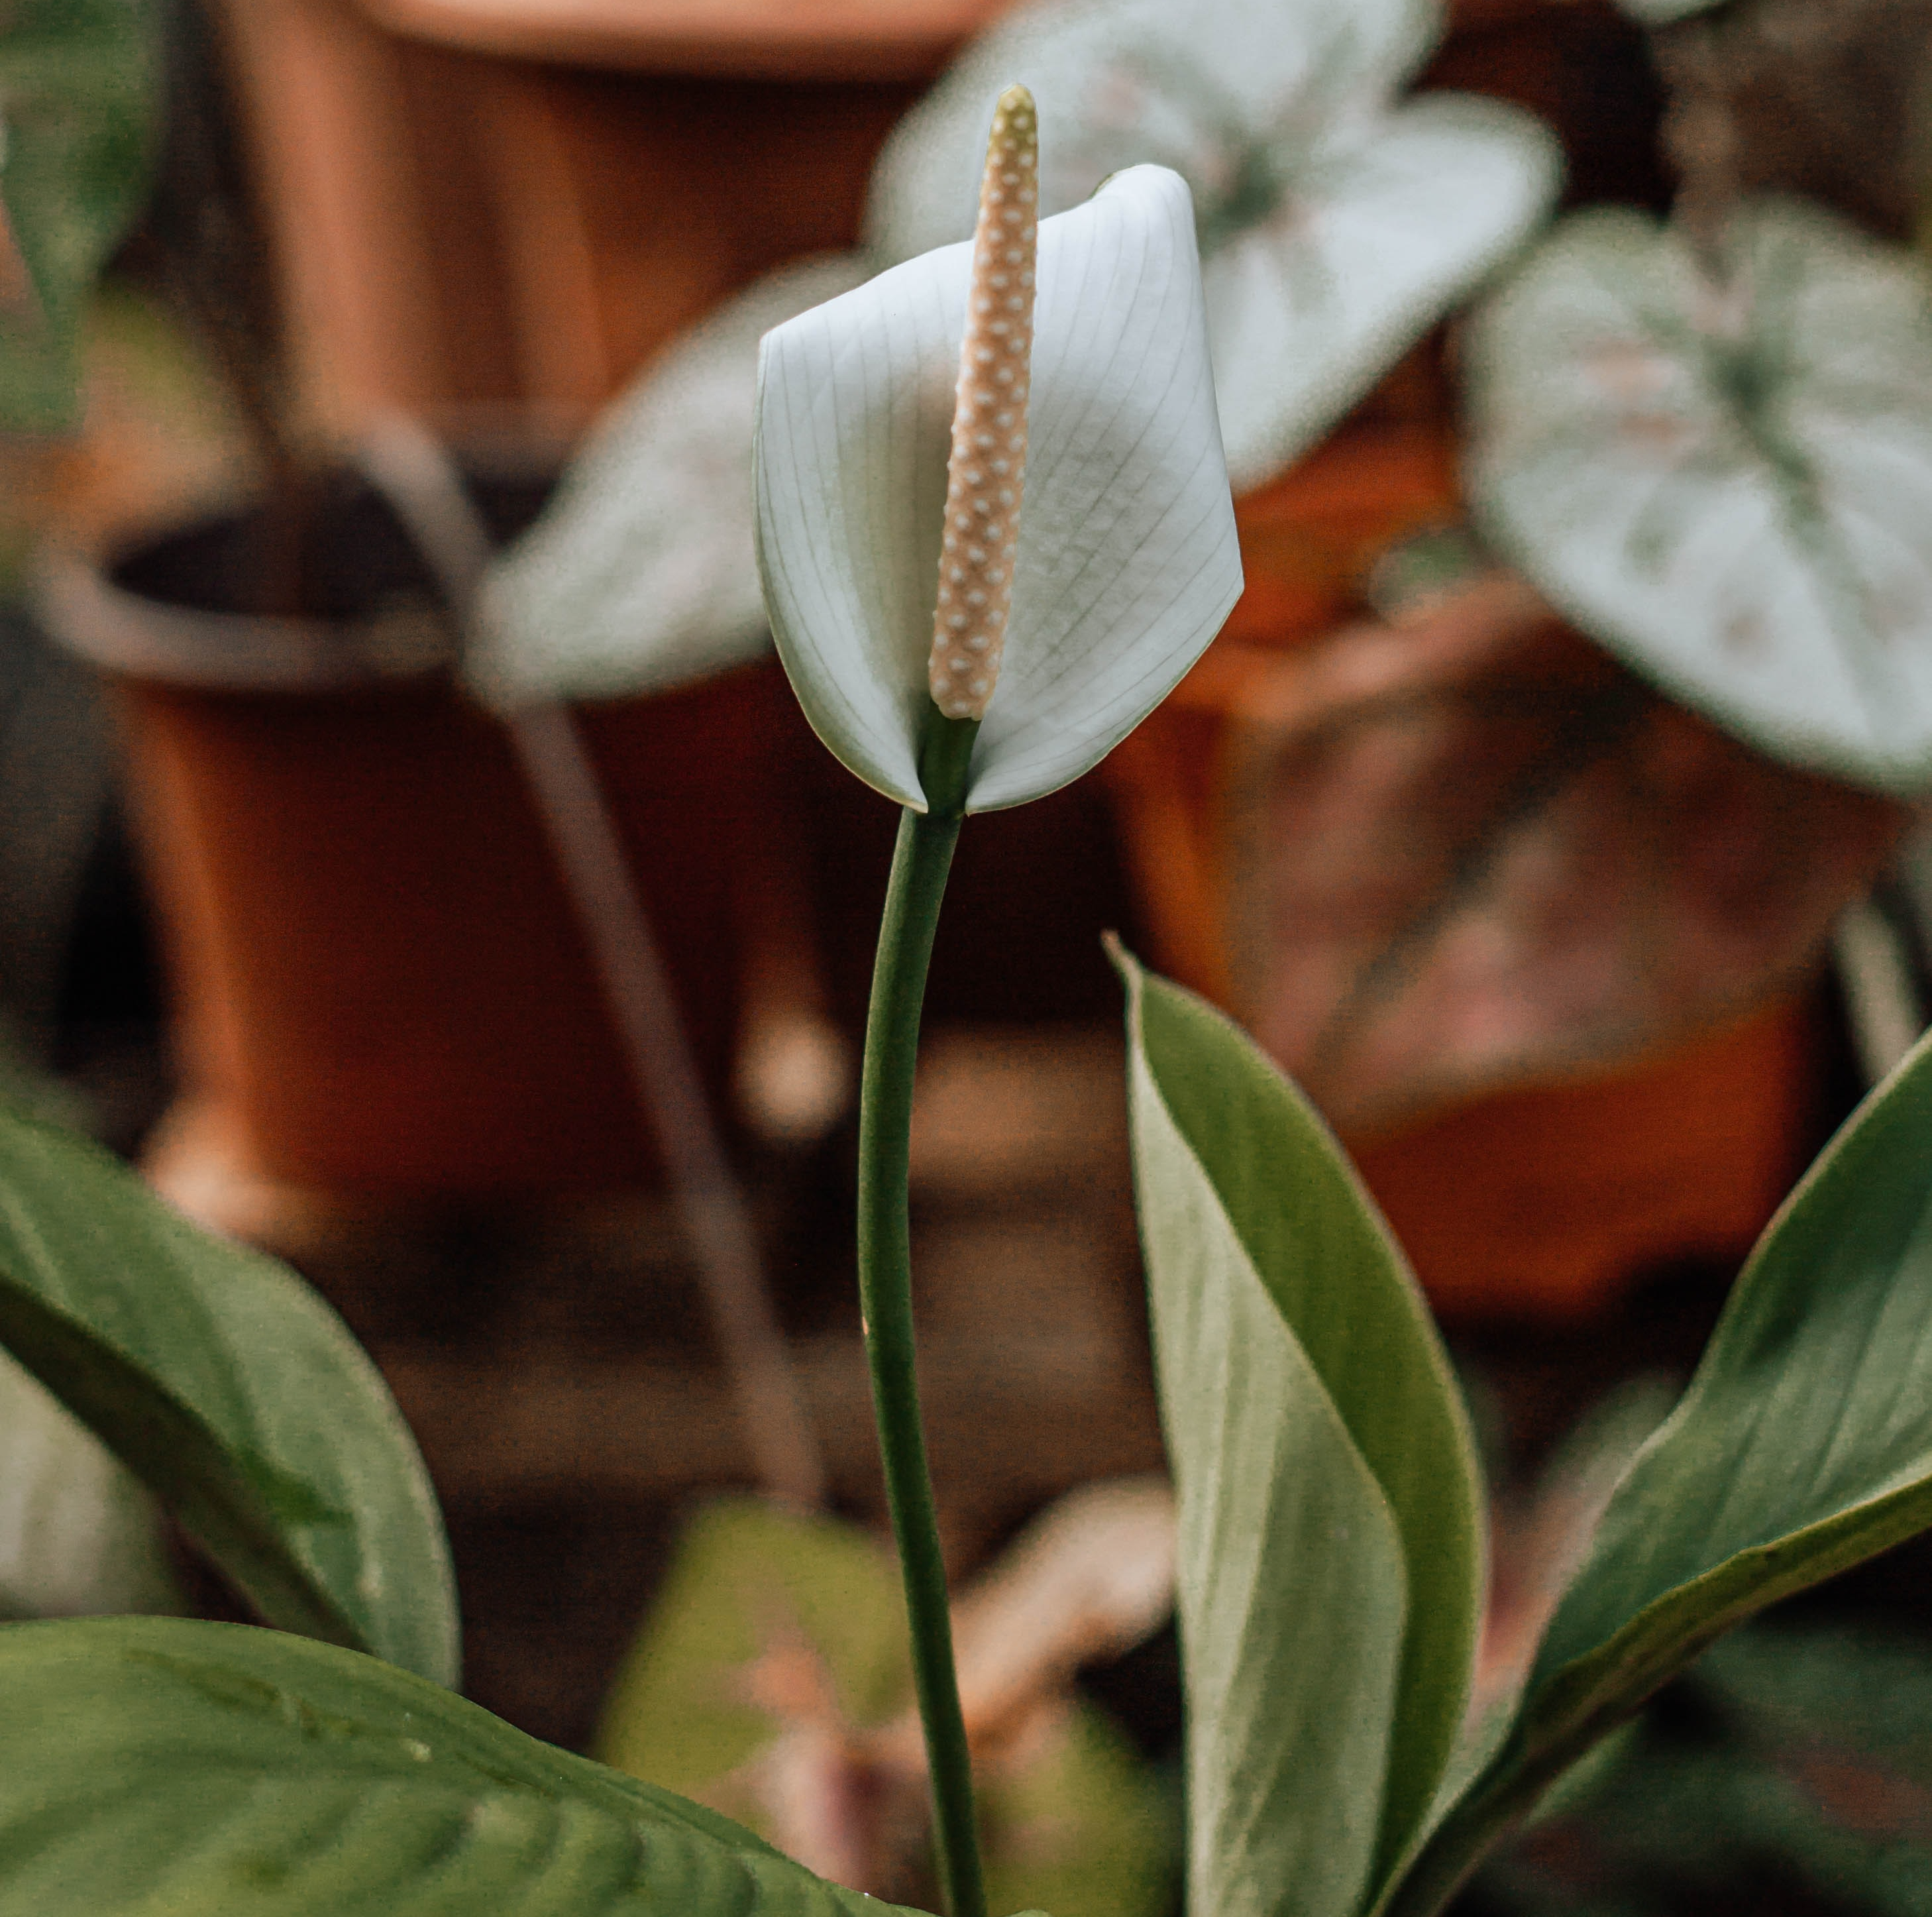 Spathiphyllum-Blüte, dahinter unscharf weitere Pflanzen